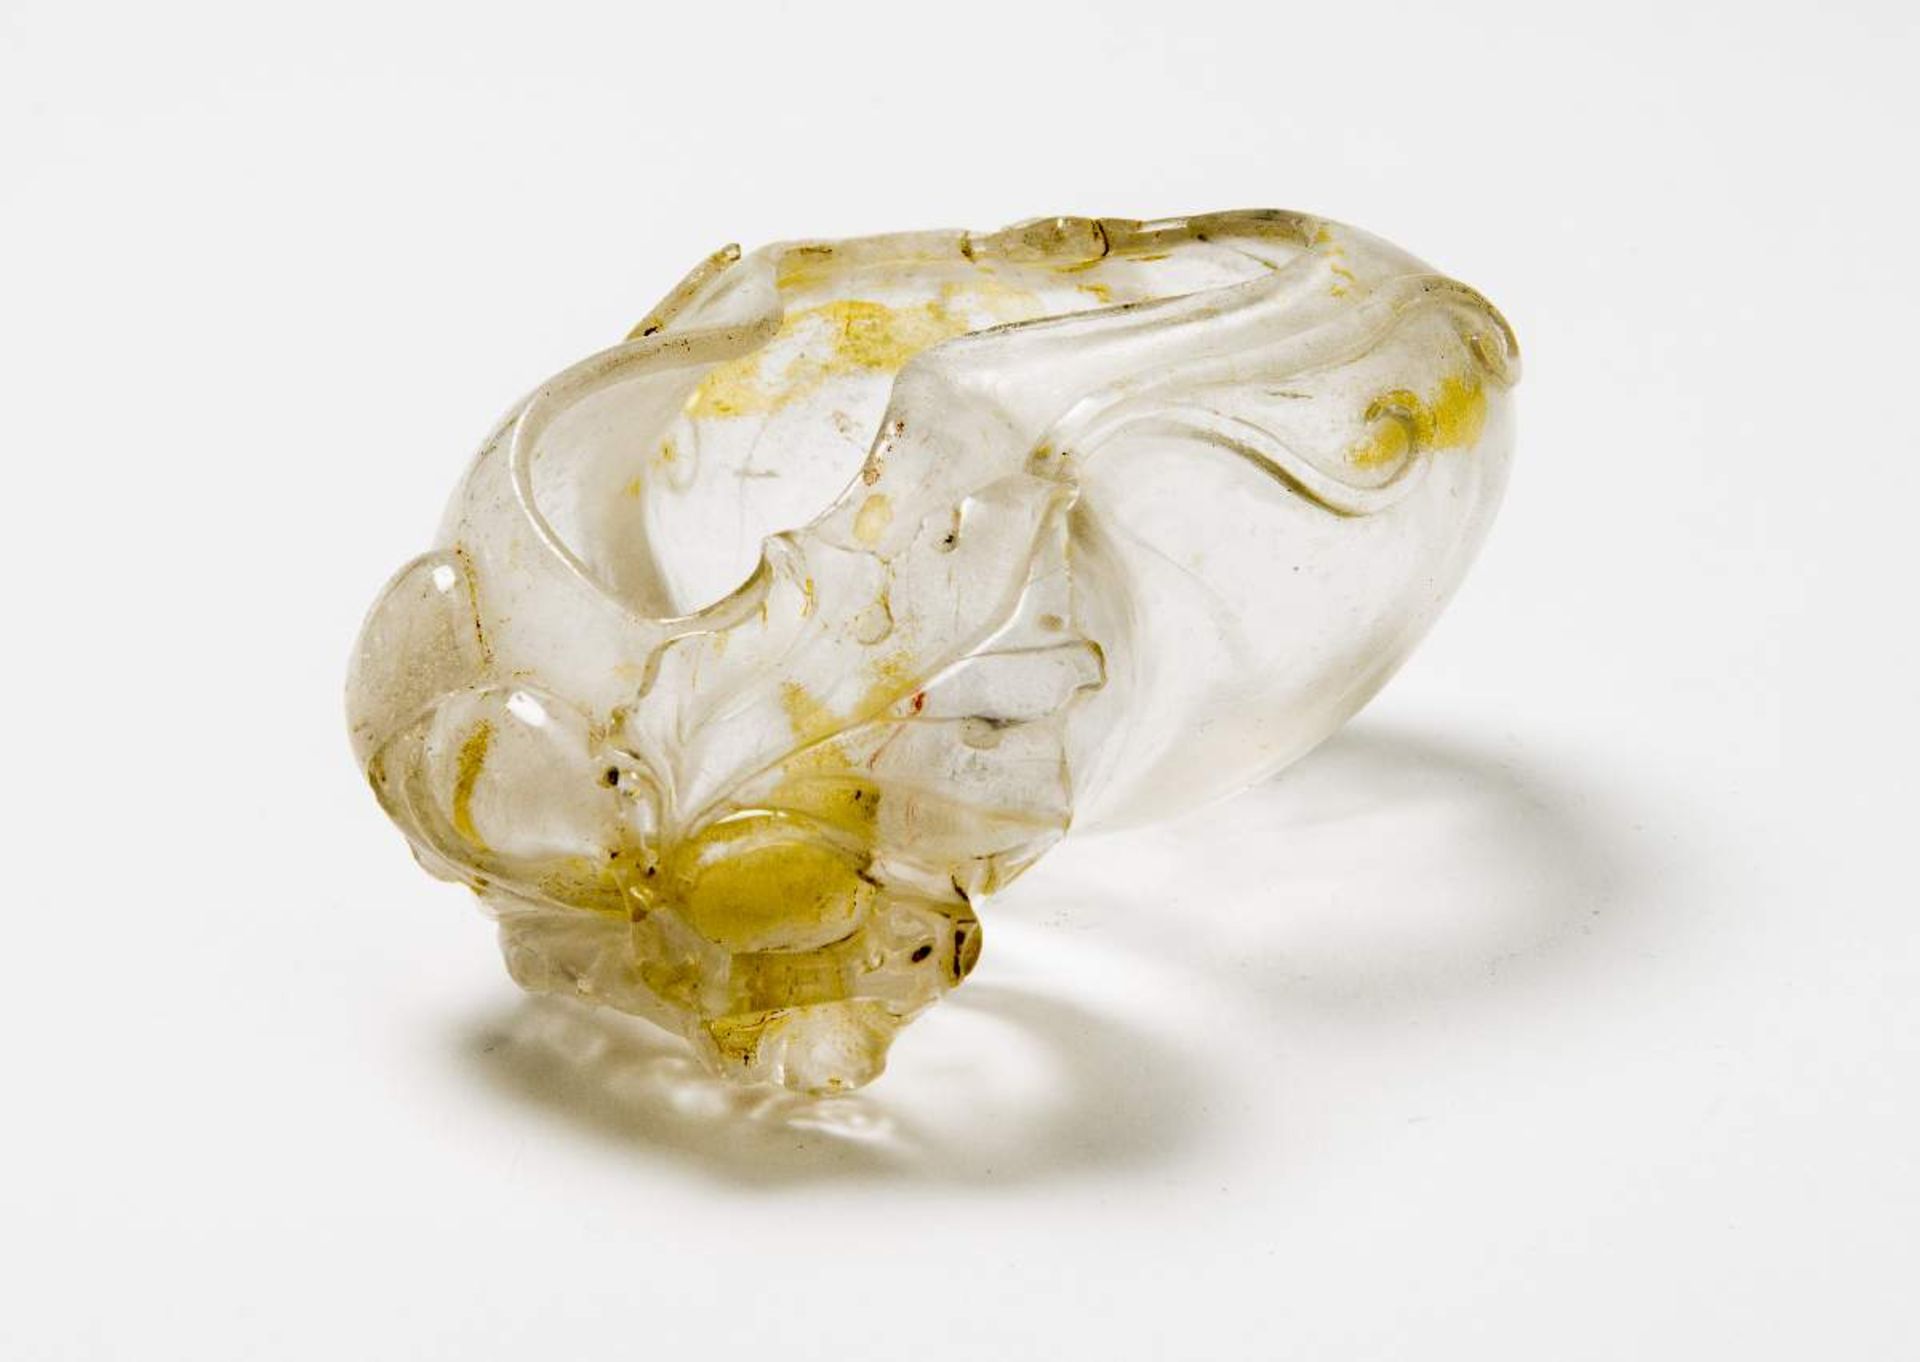 WASSERGEFÄSS FÜR DEN KALLIGRAFENBergkristall. China, Qing-Dynastie, 18. bis 19. Jh.Eine sehr seltene